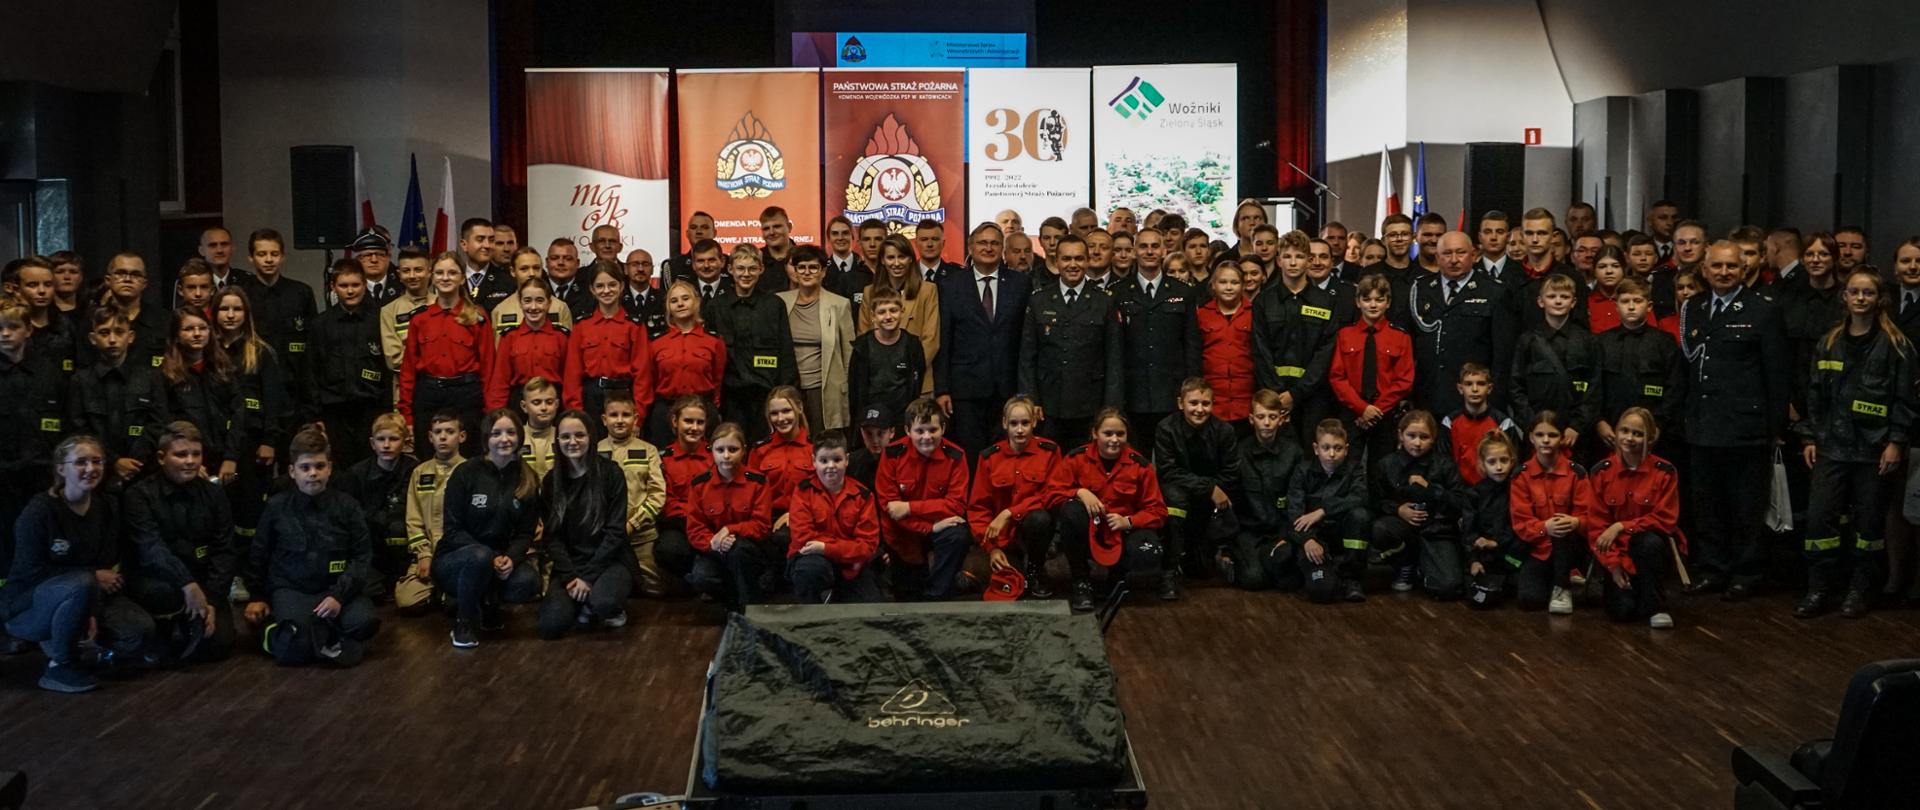 Uroczystość wręczenia promes dla Ochotniczych Straży Pożarnych na zakup sprzętu dla członków Młodzieżowych Drużyn Pożarniczych z terenu powiatu lublinieckiego